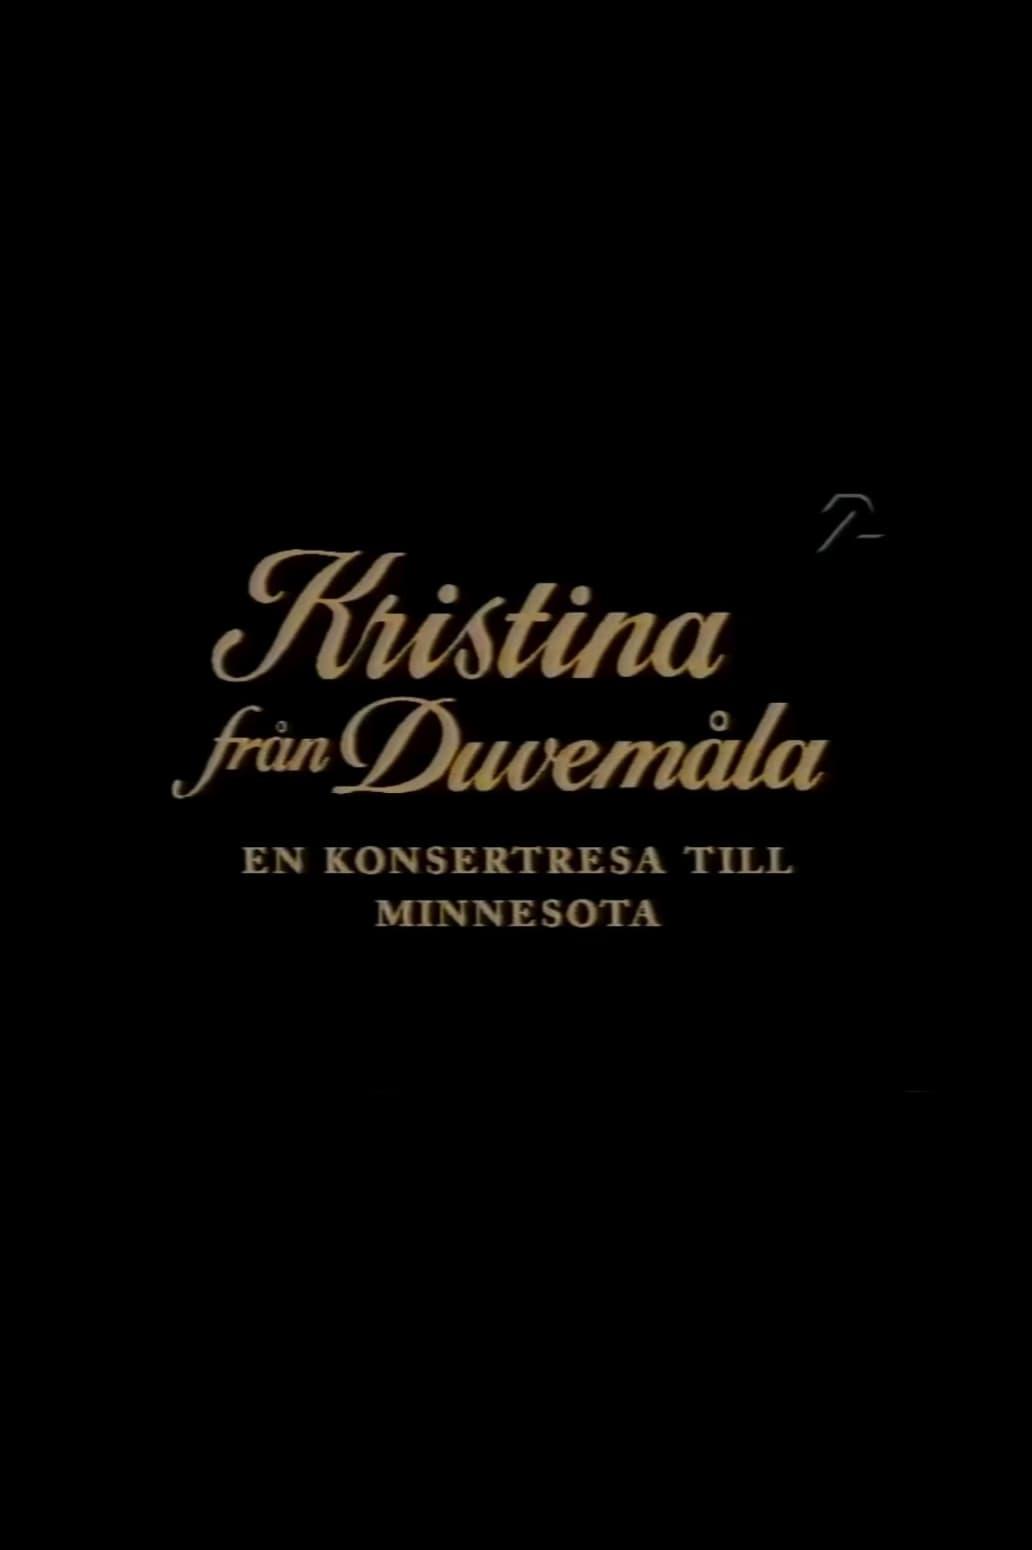 Kristina från Duvemåla - en konsertresa till Minnesota poster